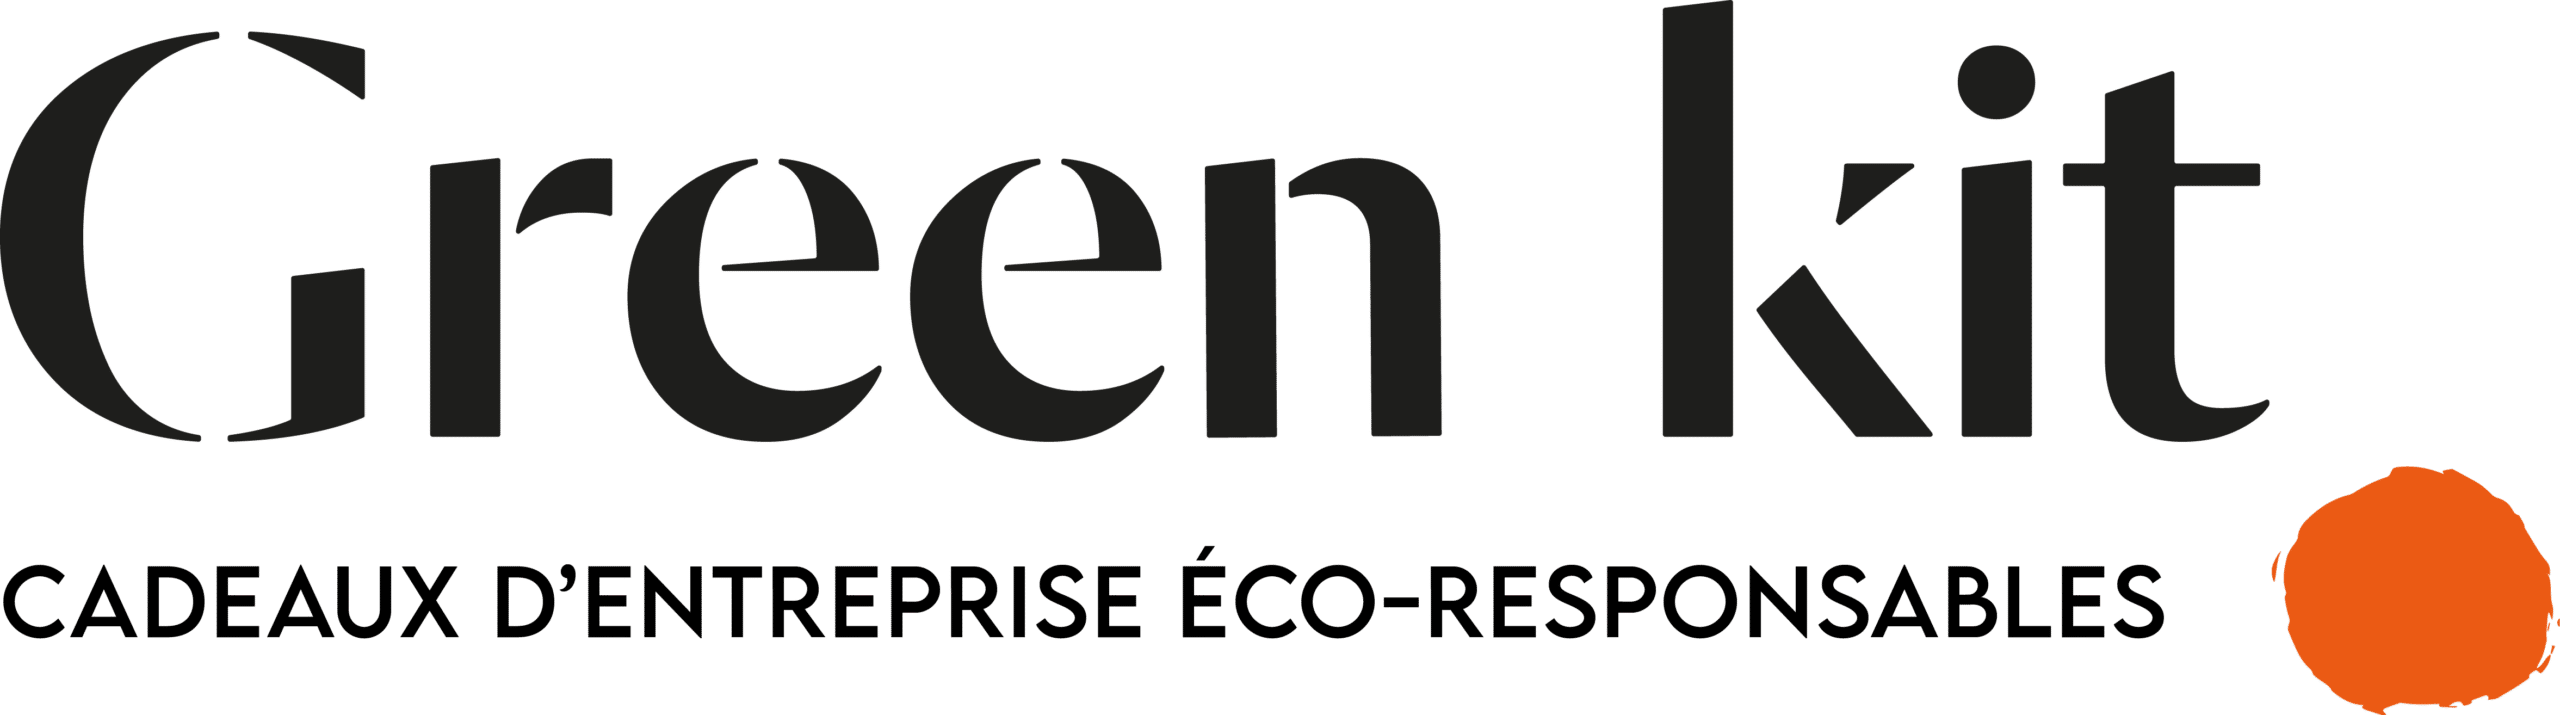 logo greenkit noir avec baseline et texte, une entreprise de cadeaux d'entreprise écologiques